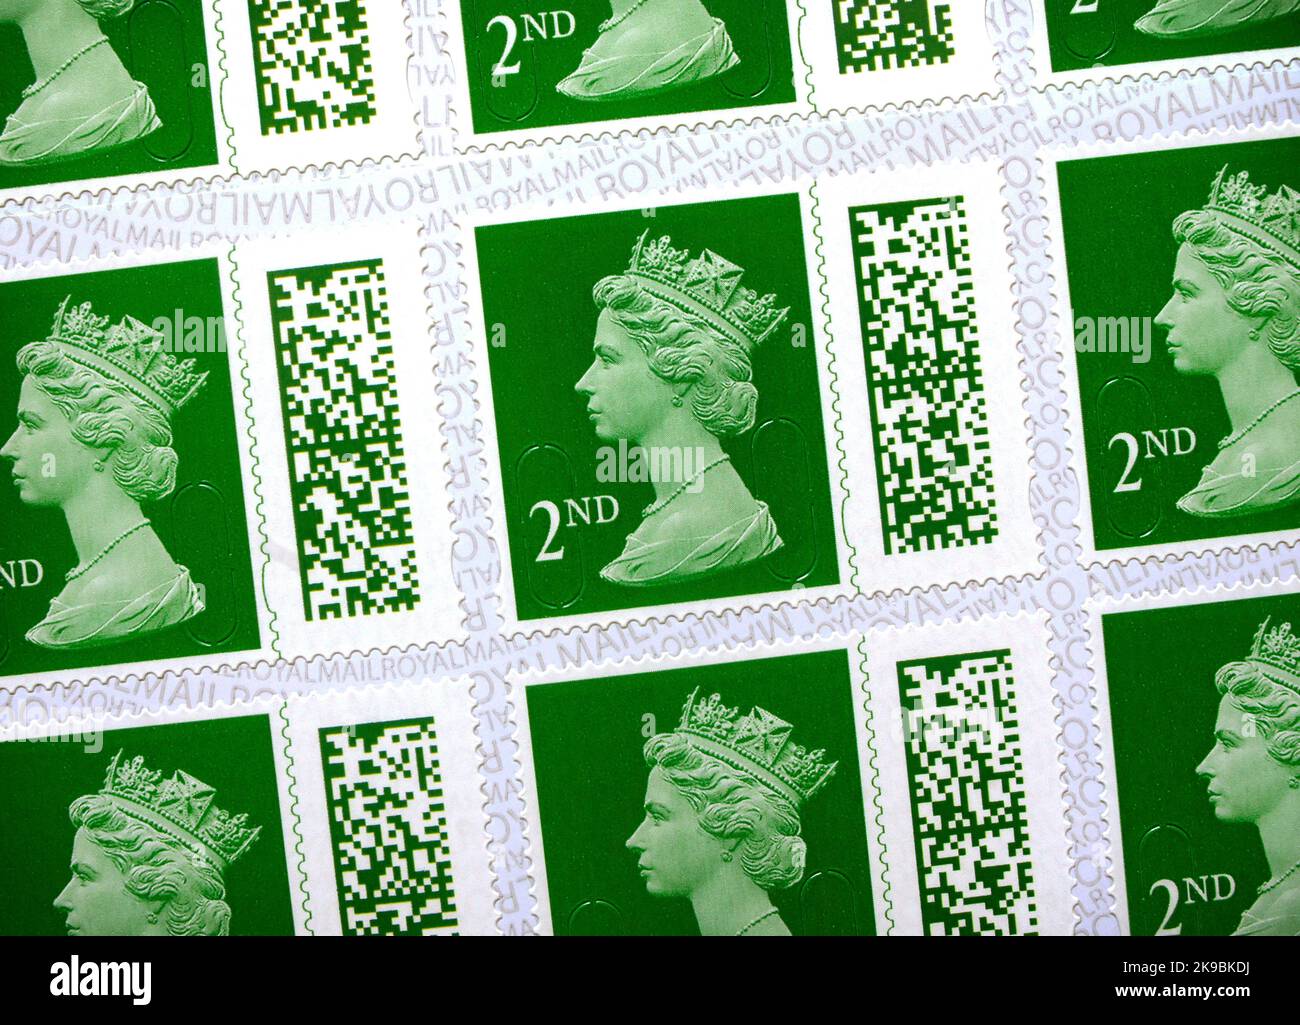 Francobolli di classe Royal Mail del Regno Unito 2nd. Nuovo design con un codice a barre unico introdotto nel febbraio 2022. I vecchi francobolli non con codice a barre sono validi solo fino al 31st gennaio 2023. Foto Stock